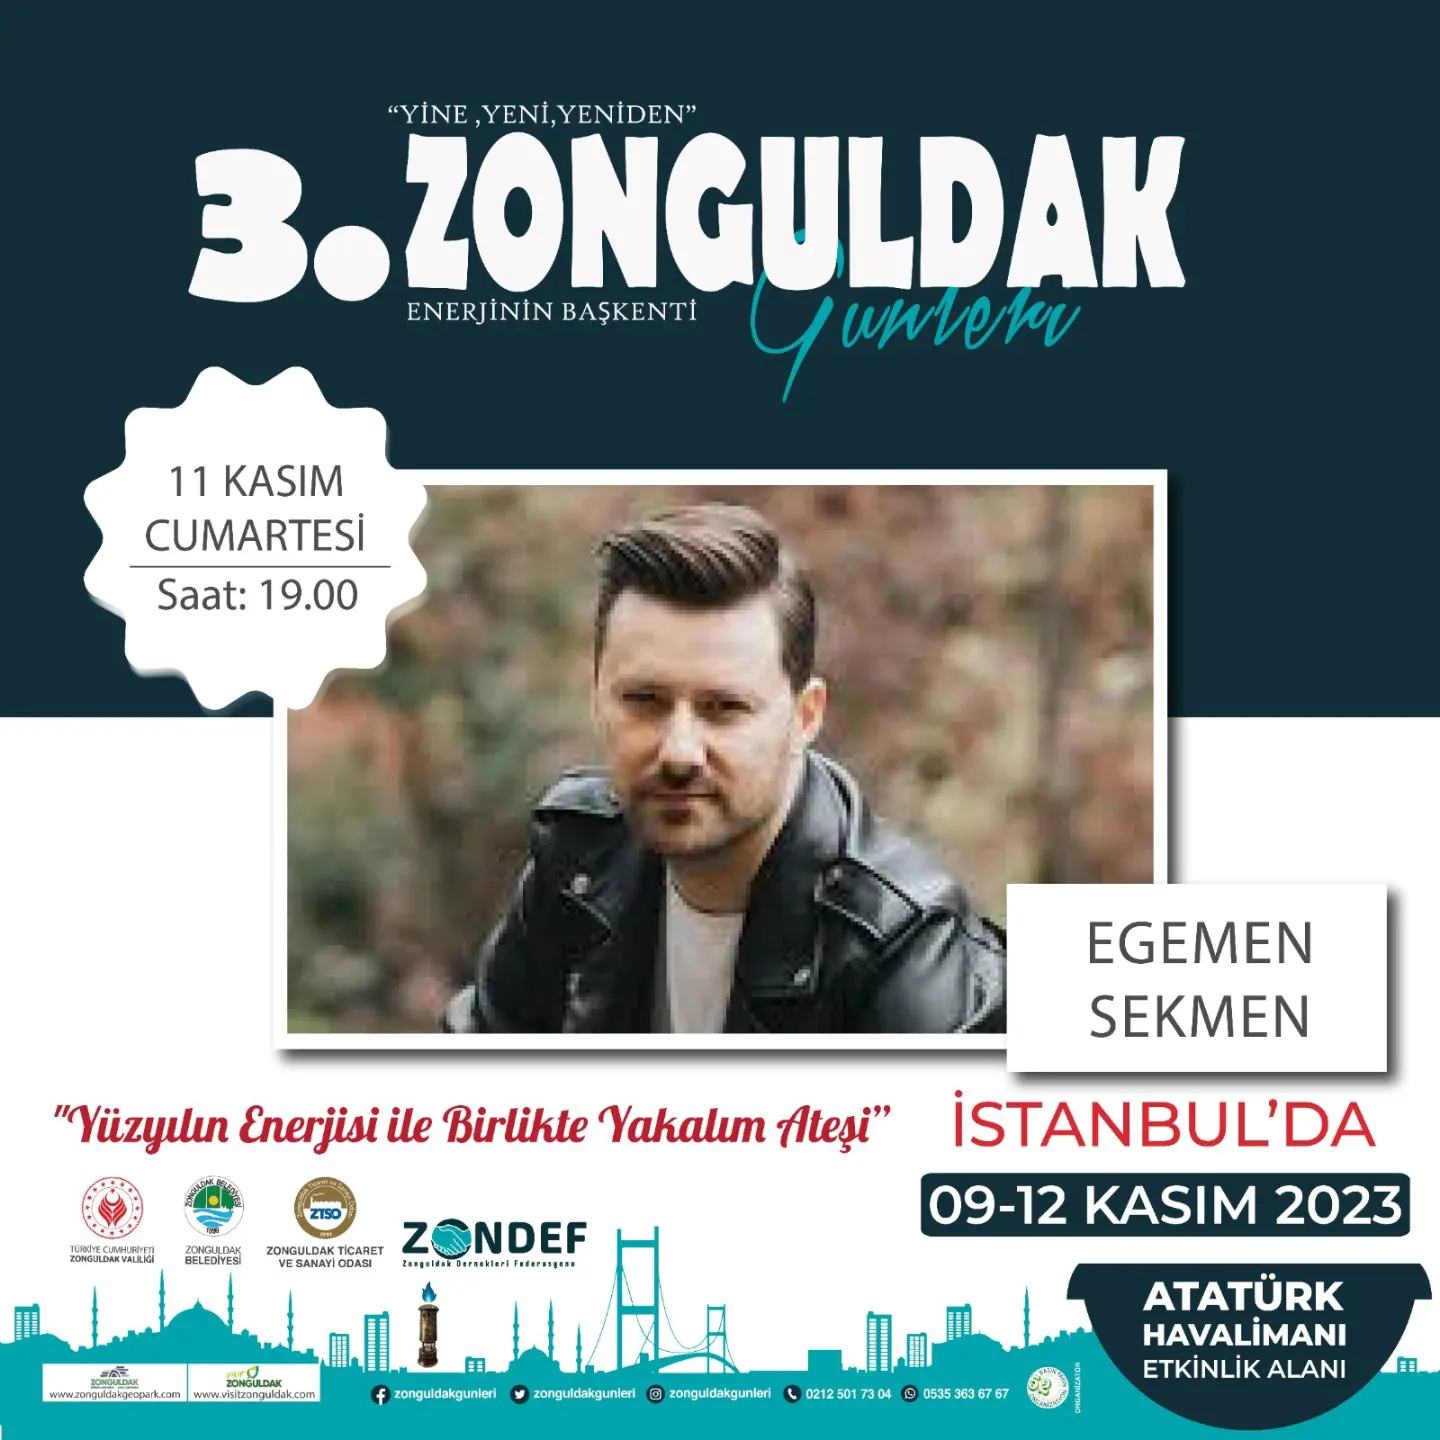 İstanbul'daki Zonguldak günleri program akış